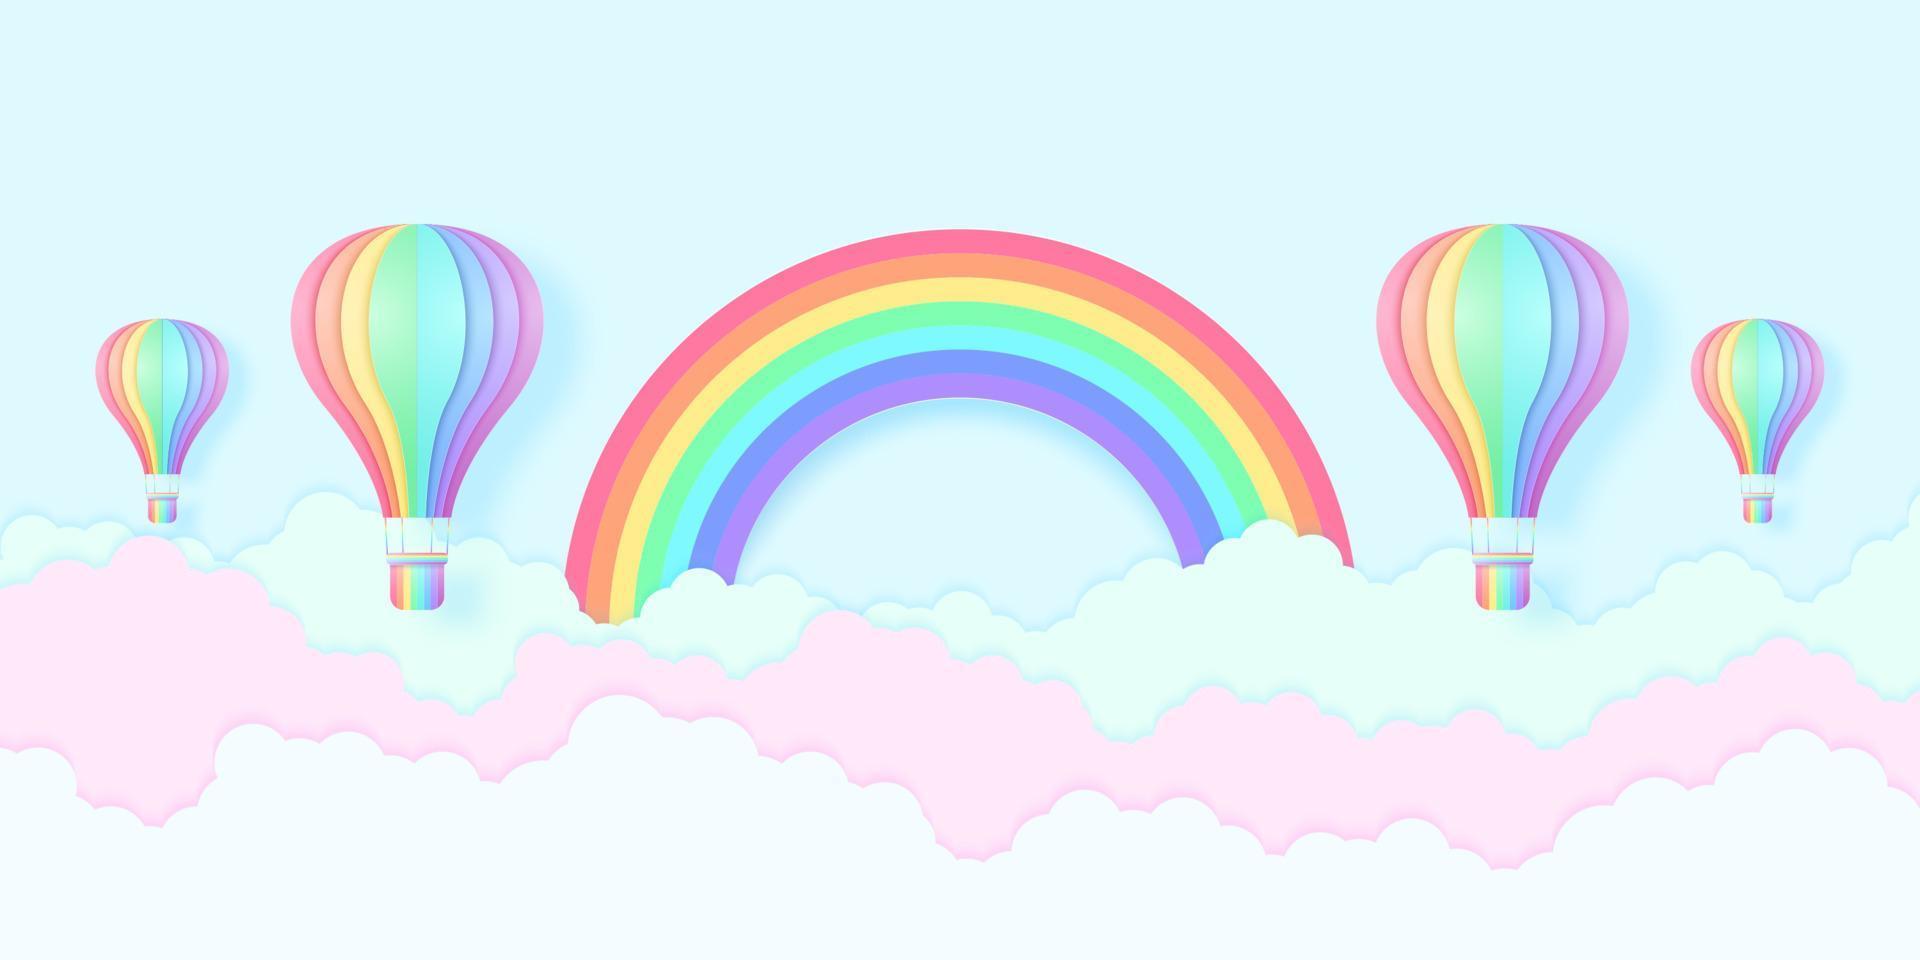 montgolfières de couleur arc-en-ciel volant dans le ciel bleu et nuages colorés avec arc-en-ciel, style art papier vecteur